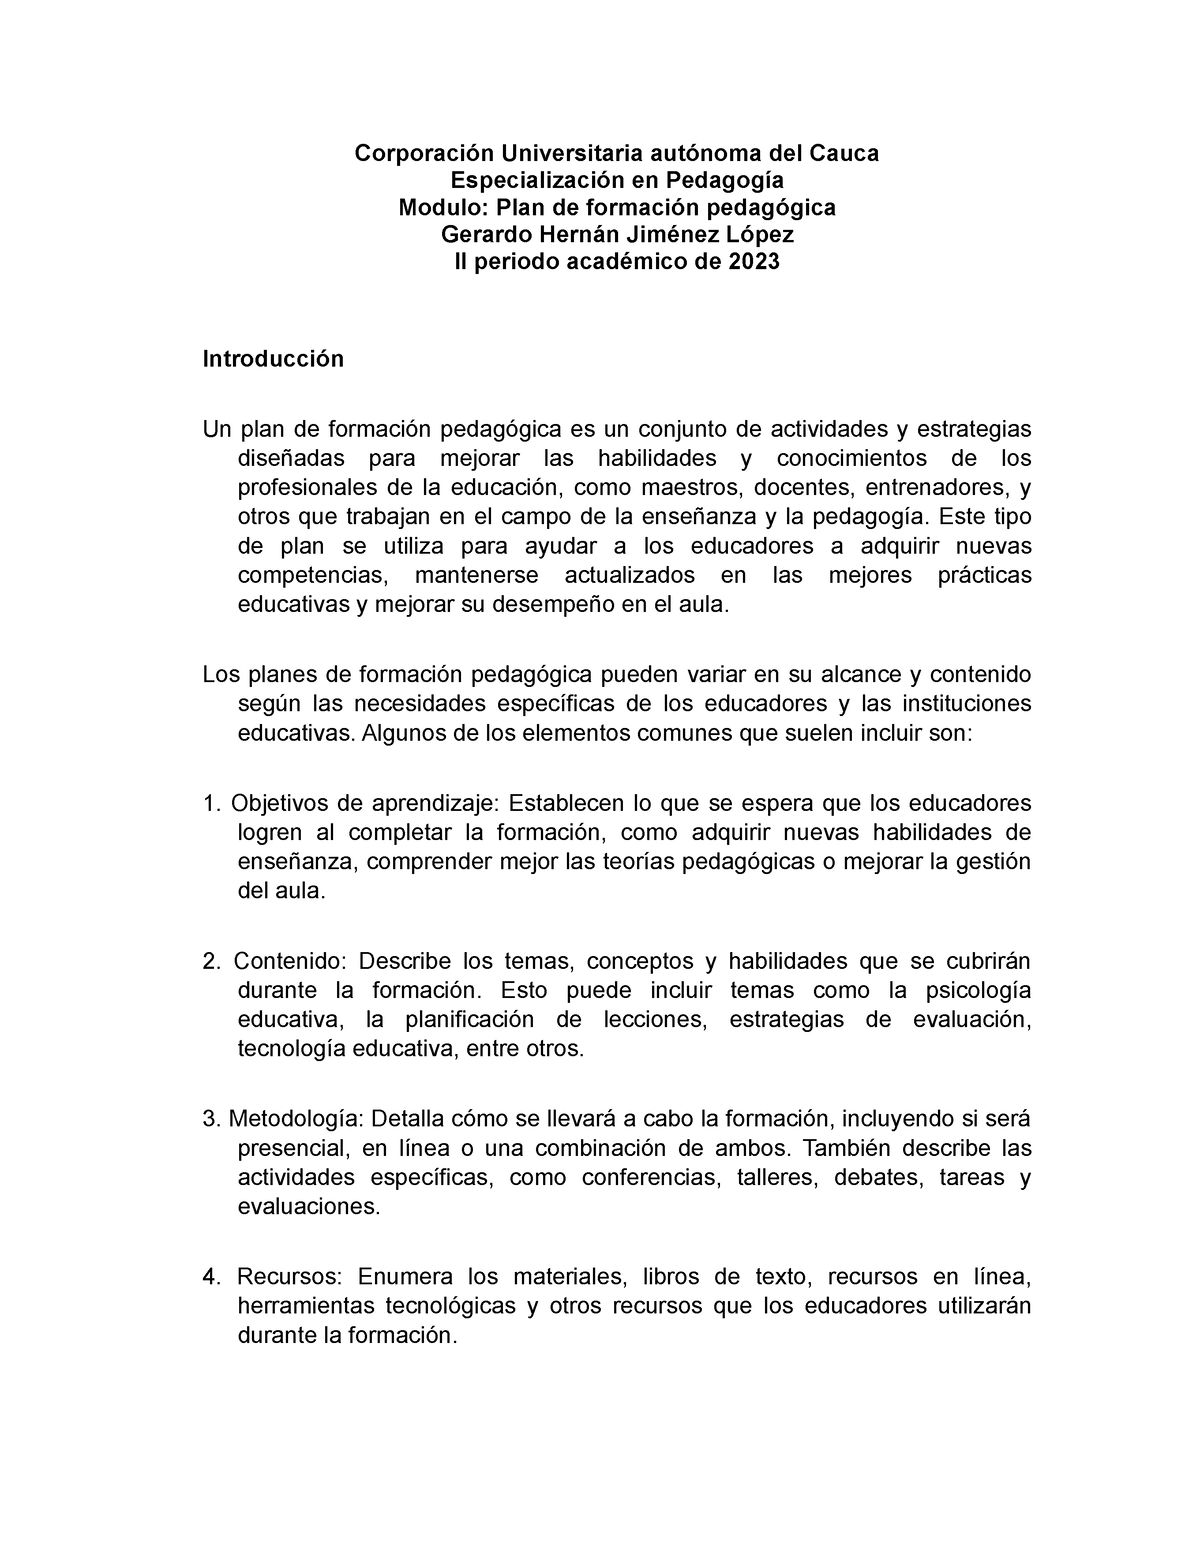 Plan De Formacion Pedagogica 2023 Corporación Universitaria Autónoma Del Cauca Especialización 4653